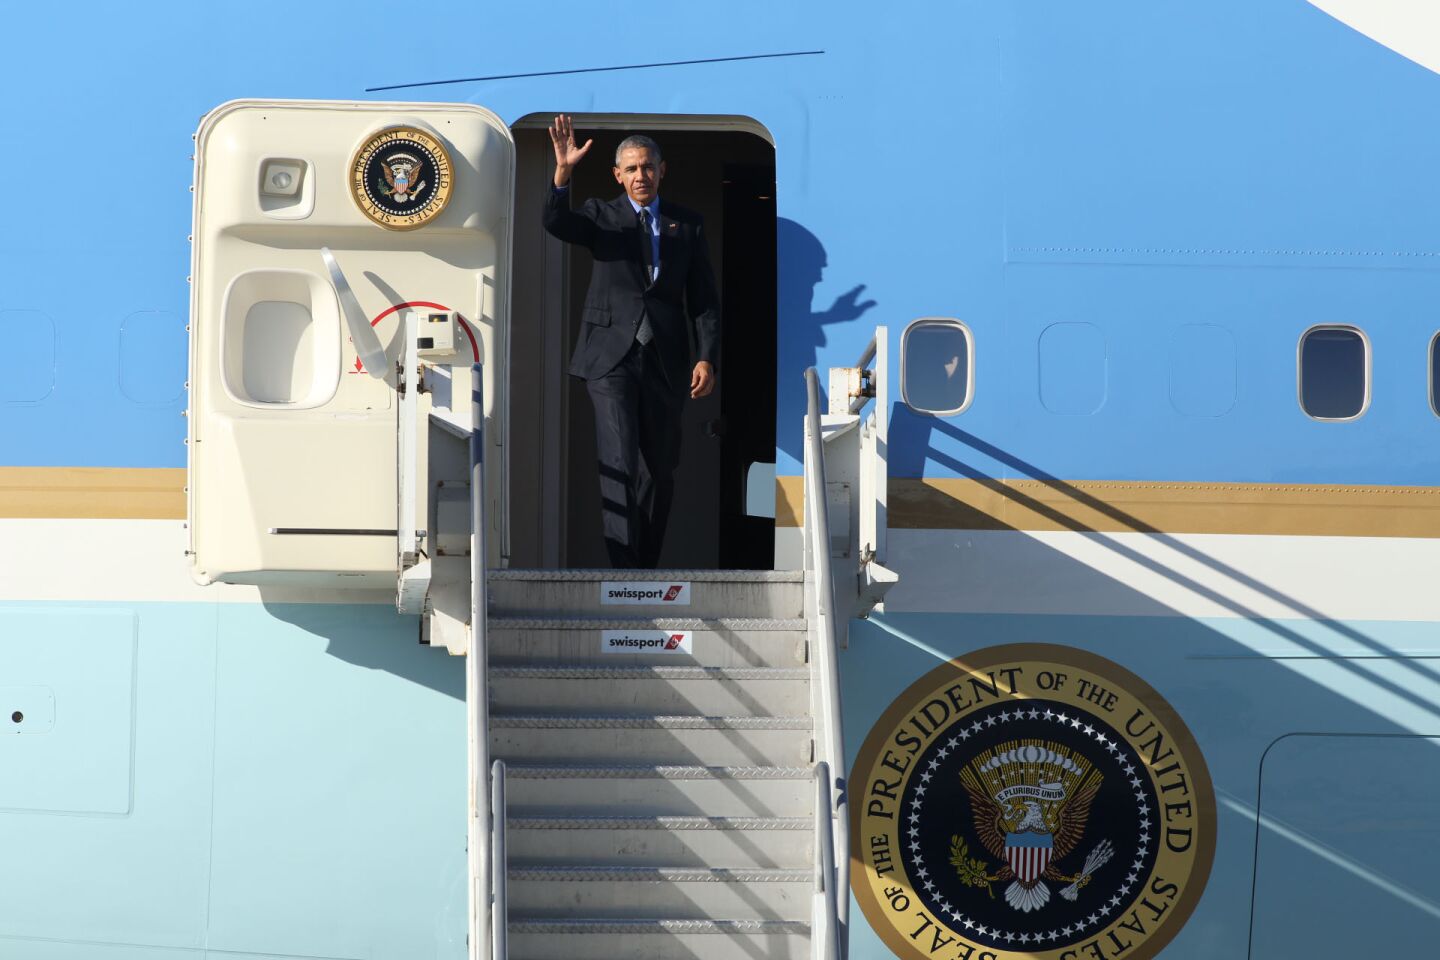 President Obama's visit